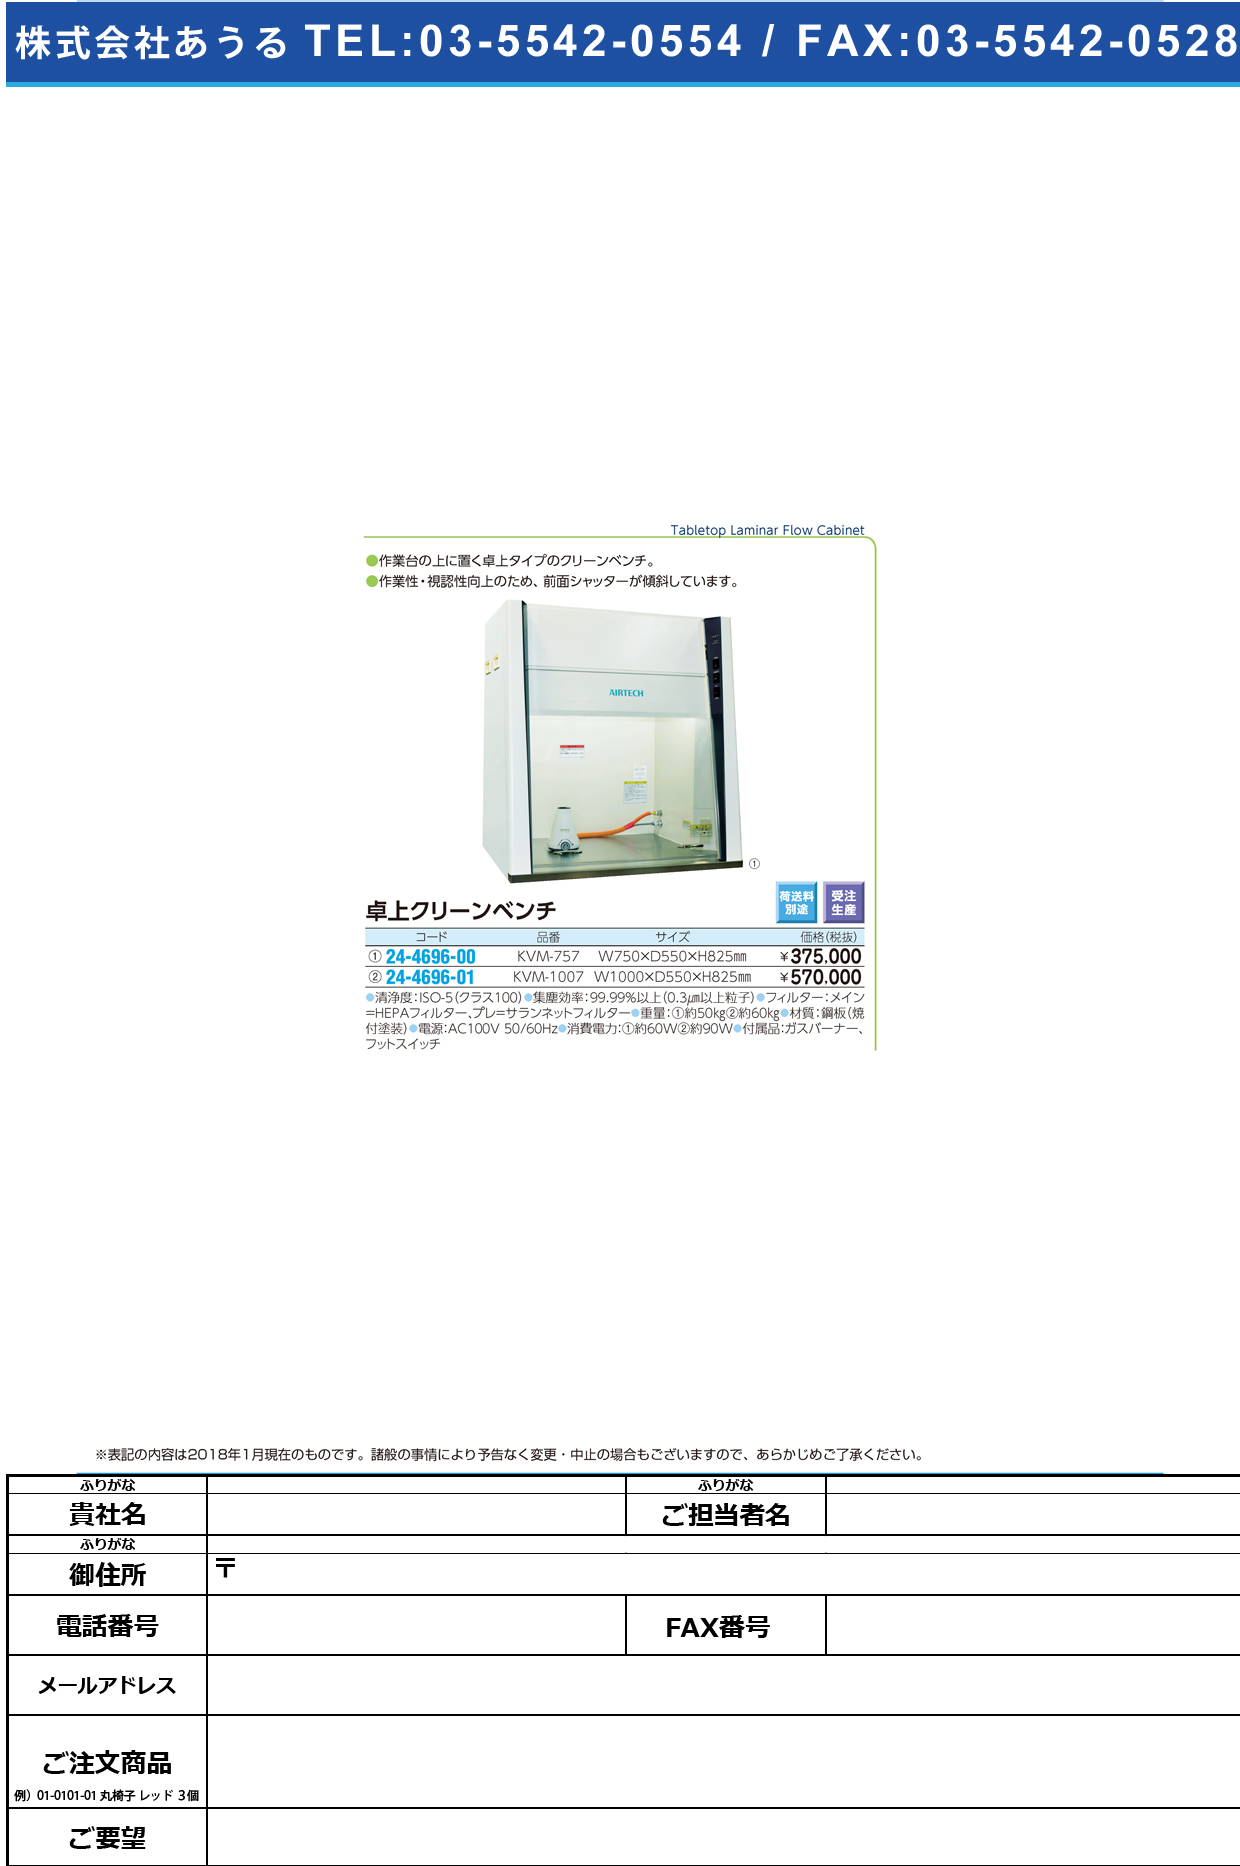 (24-4696-00)卓上クリーンベンチ KVM-757 ﾀｸｼﾞｮｳｸﾘｰﾝﾍﾞﾝﾁ【1台単位】【2018年カタログ商品】